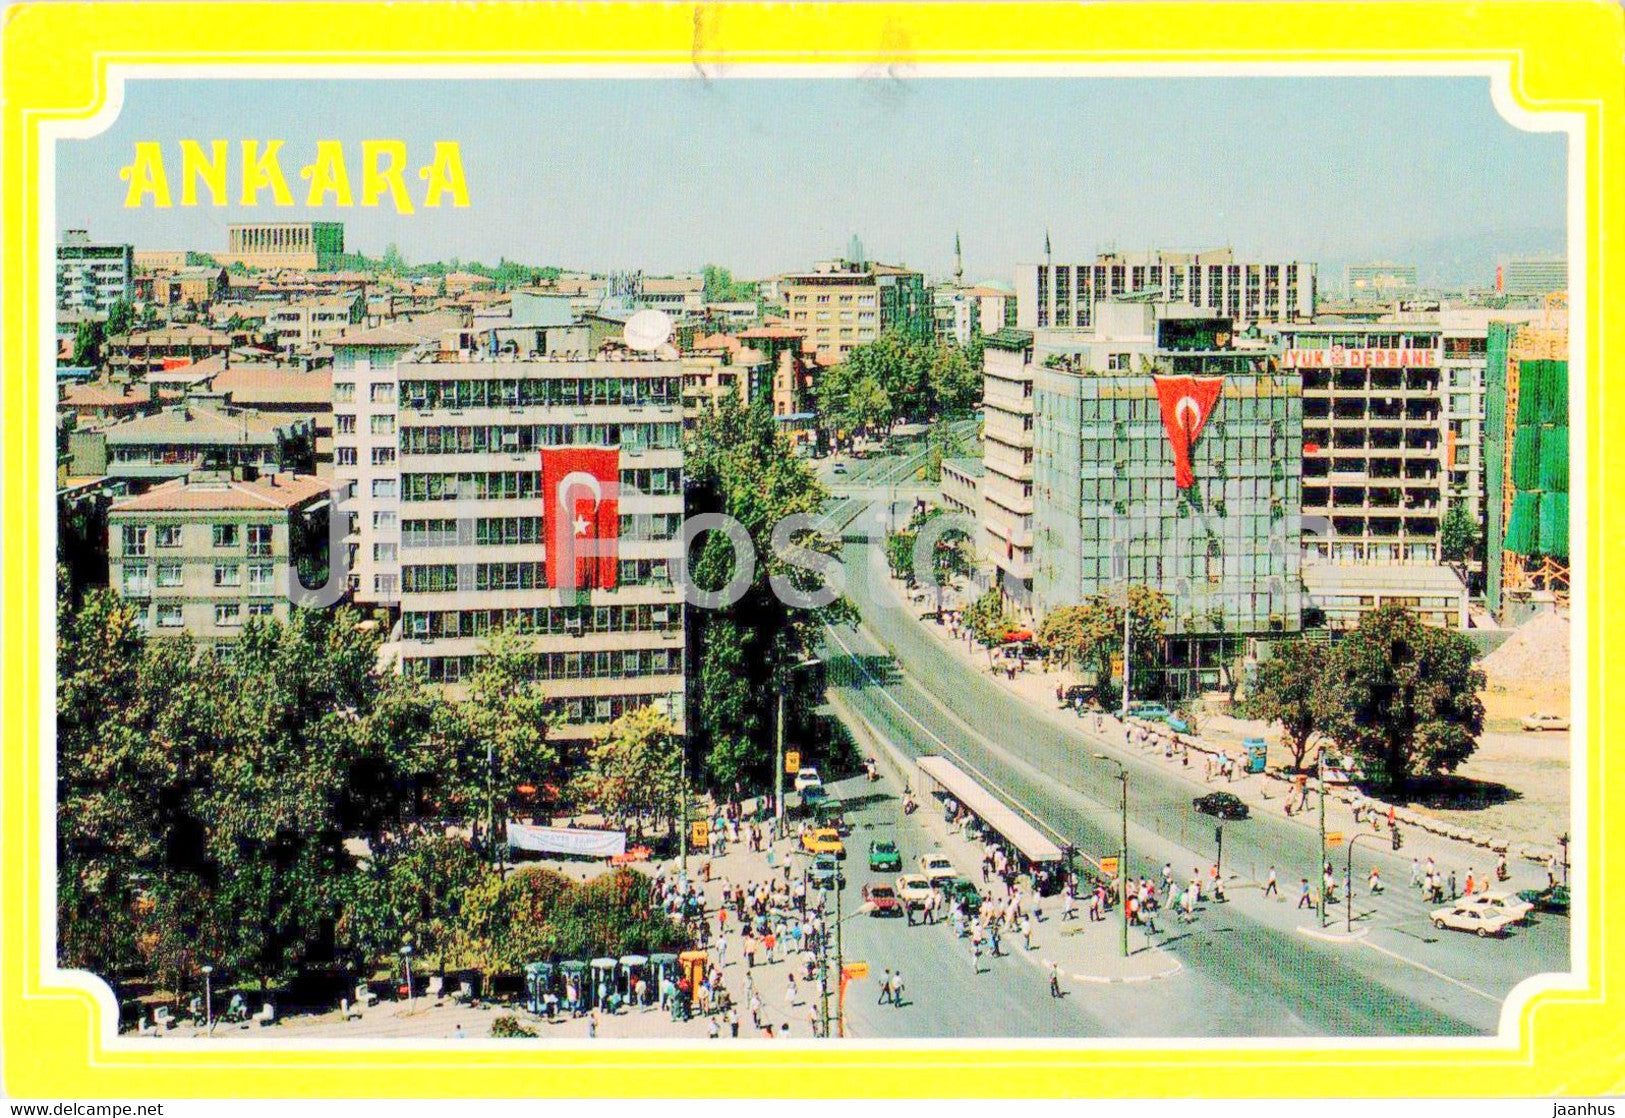 Ankara - Kizilay square - 06-5 - Turkey - used - JH Postcards